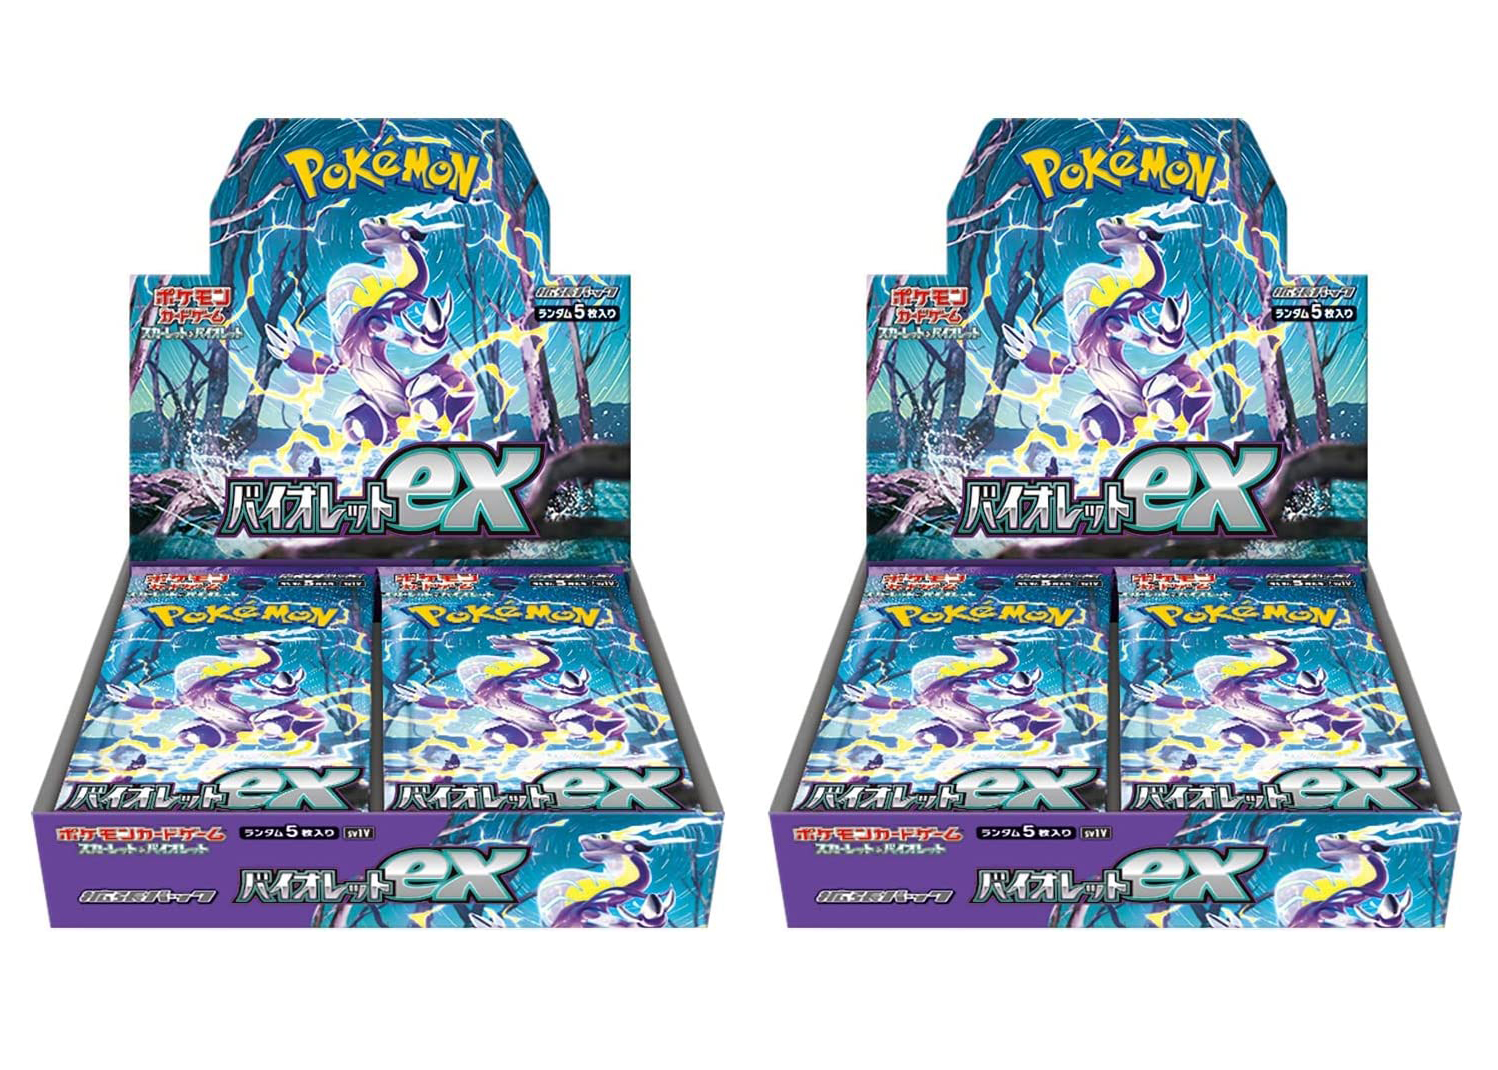 Pokémon TCG Scarlet & Violet Expansion Pack Violet ex Box